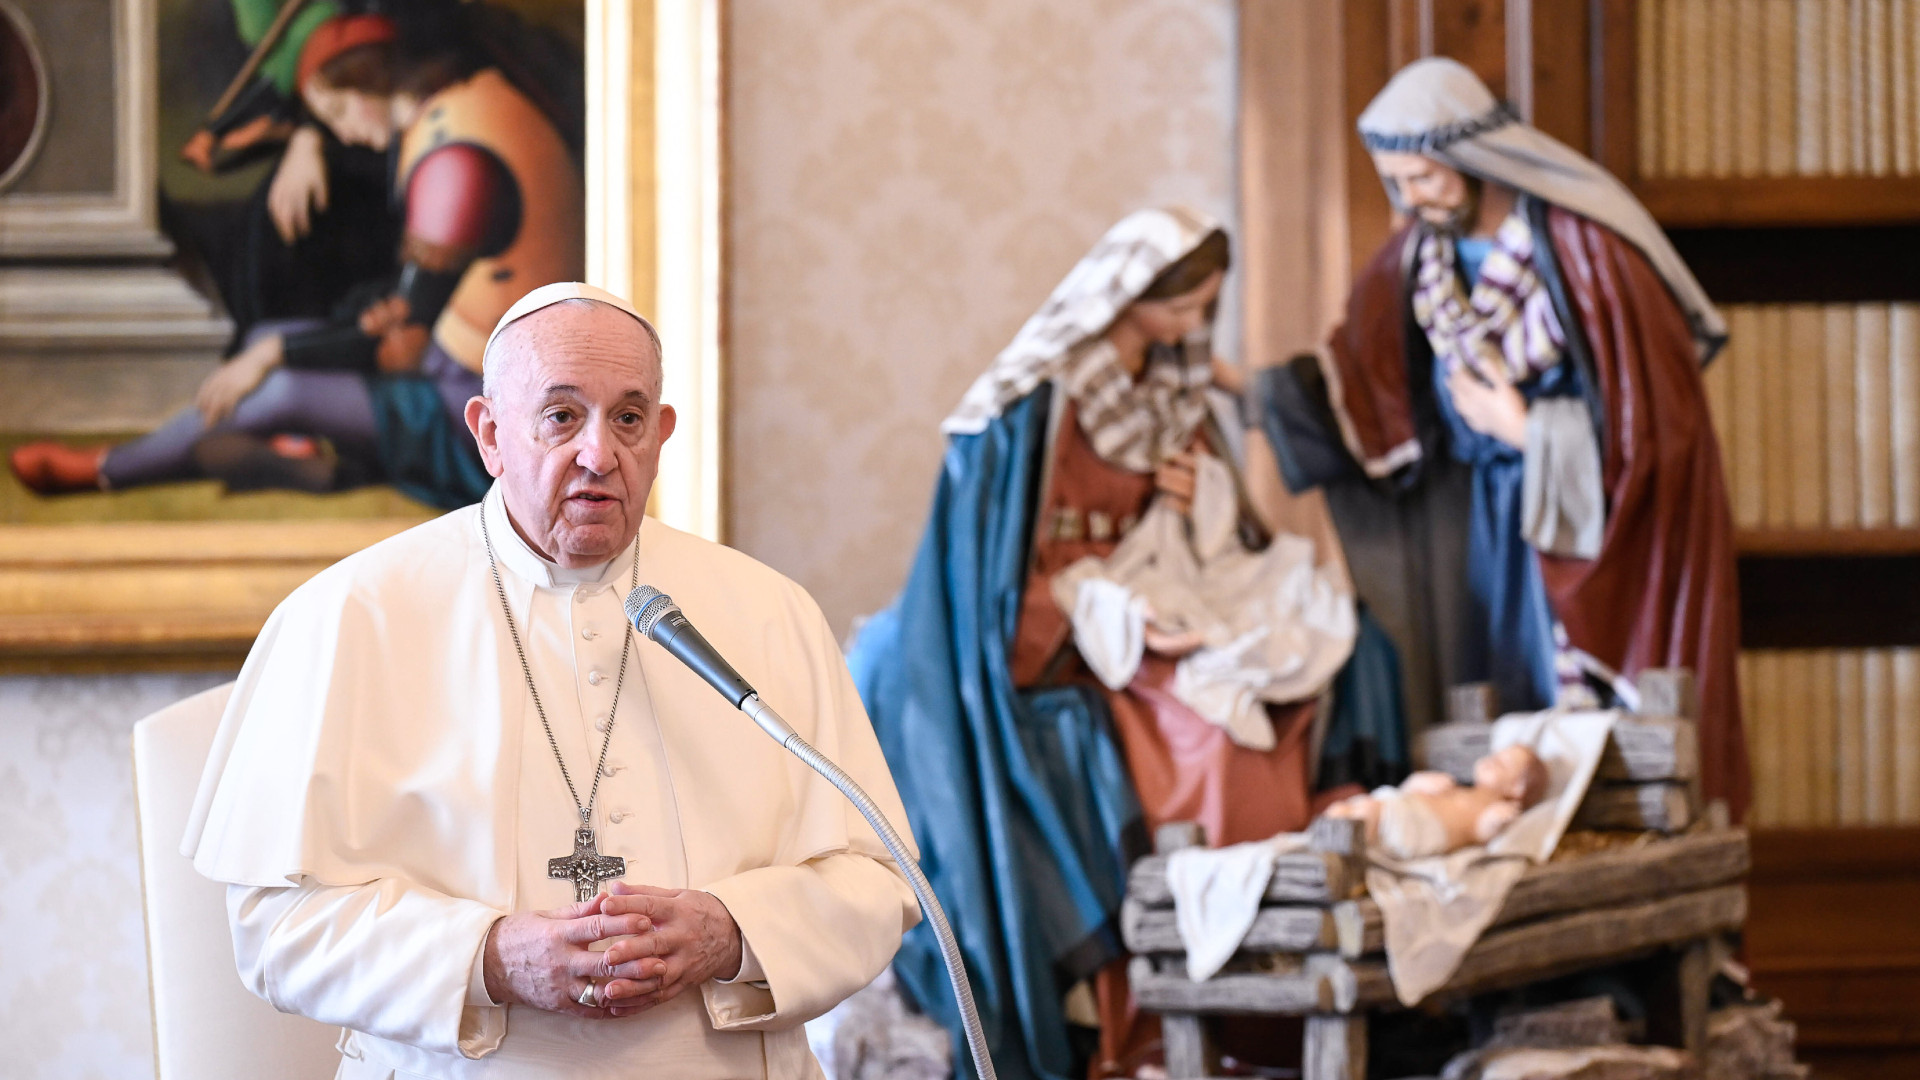 Papst Franziskus spricht Videobotschaft zu Weihnachten 2020 aus dem Vatikan – vor einer Krippe mit Maria, Josef und Jesuskind. | © KNA